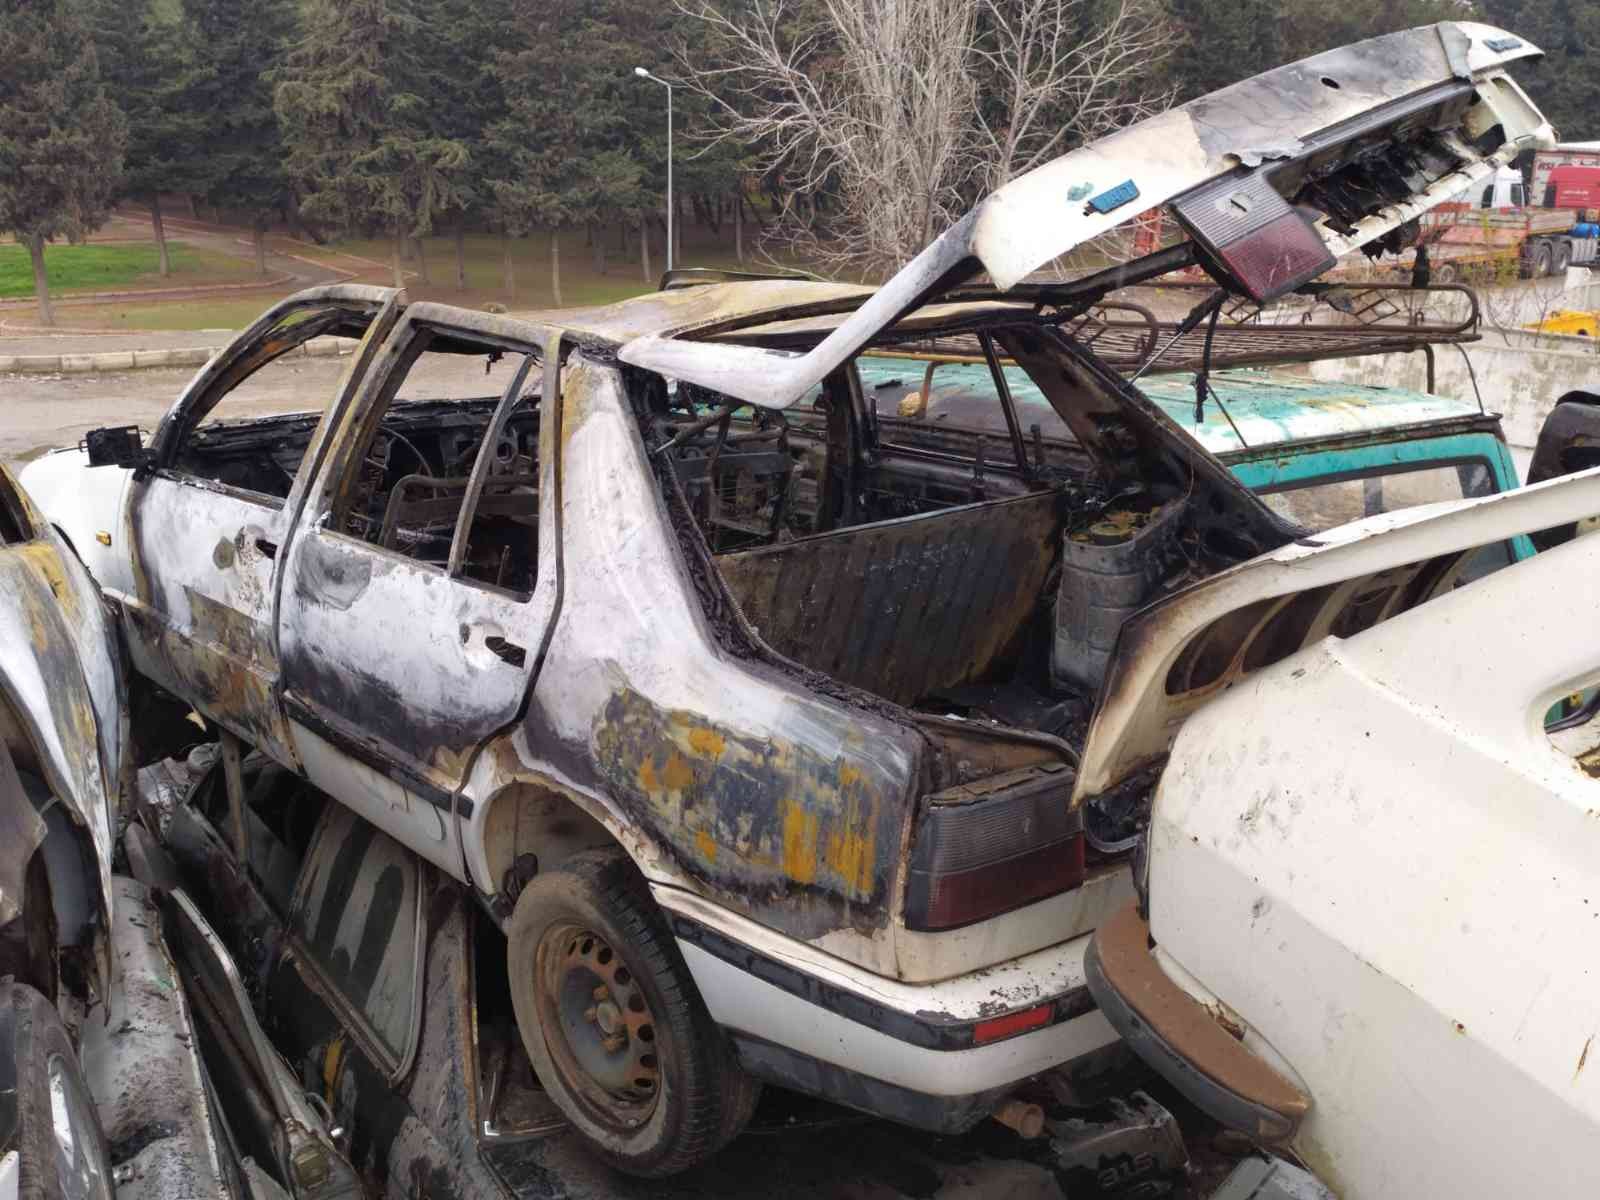 Gaziantep’te yanan otomobilin bagajında ceset bulundu #gaziantep